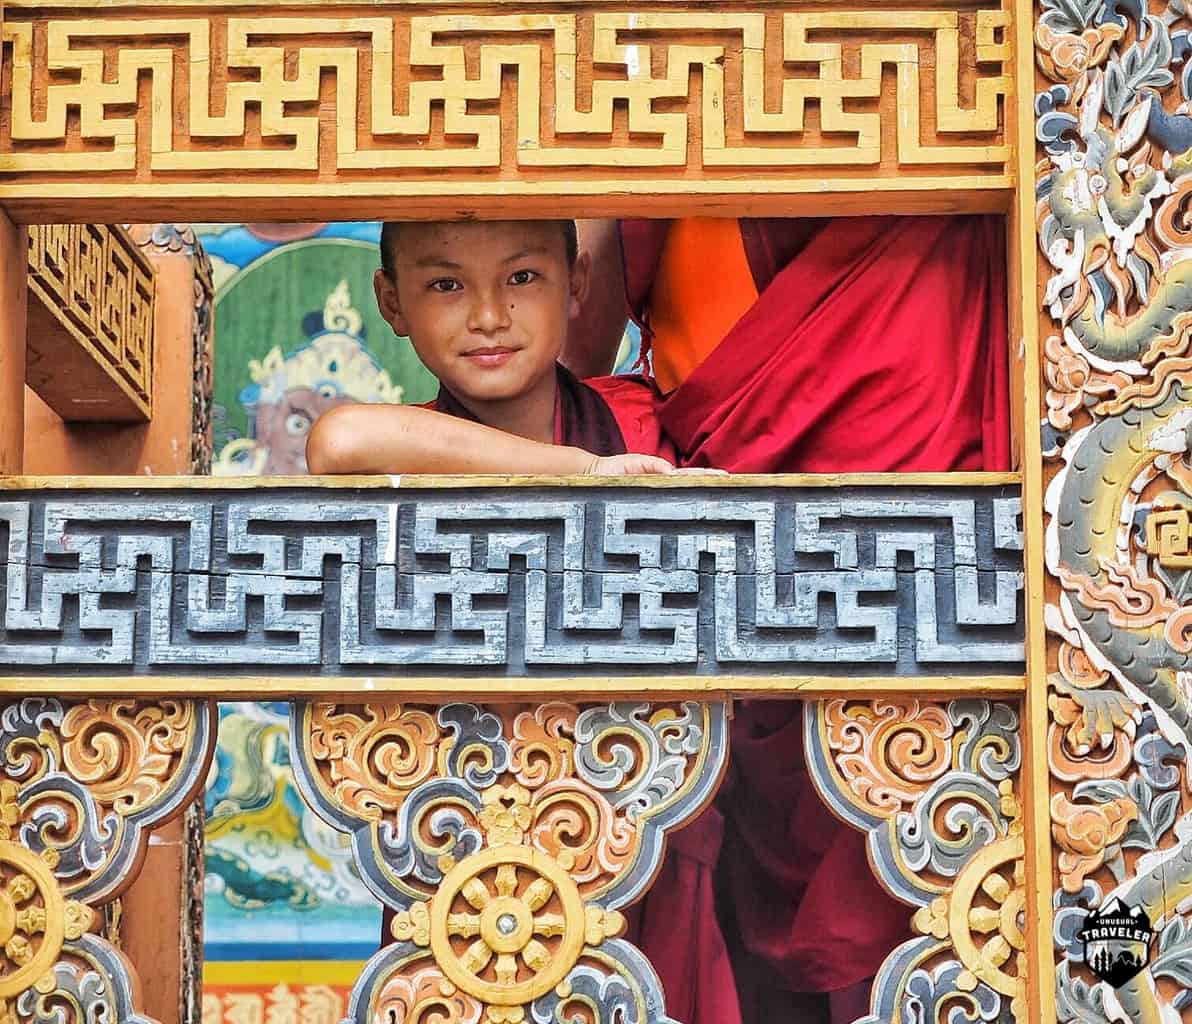 Bhutan is full of smiles